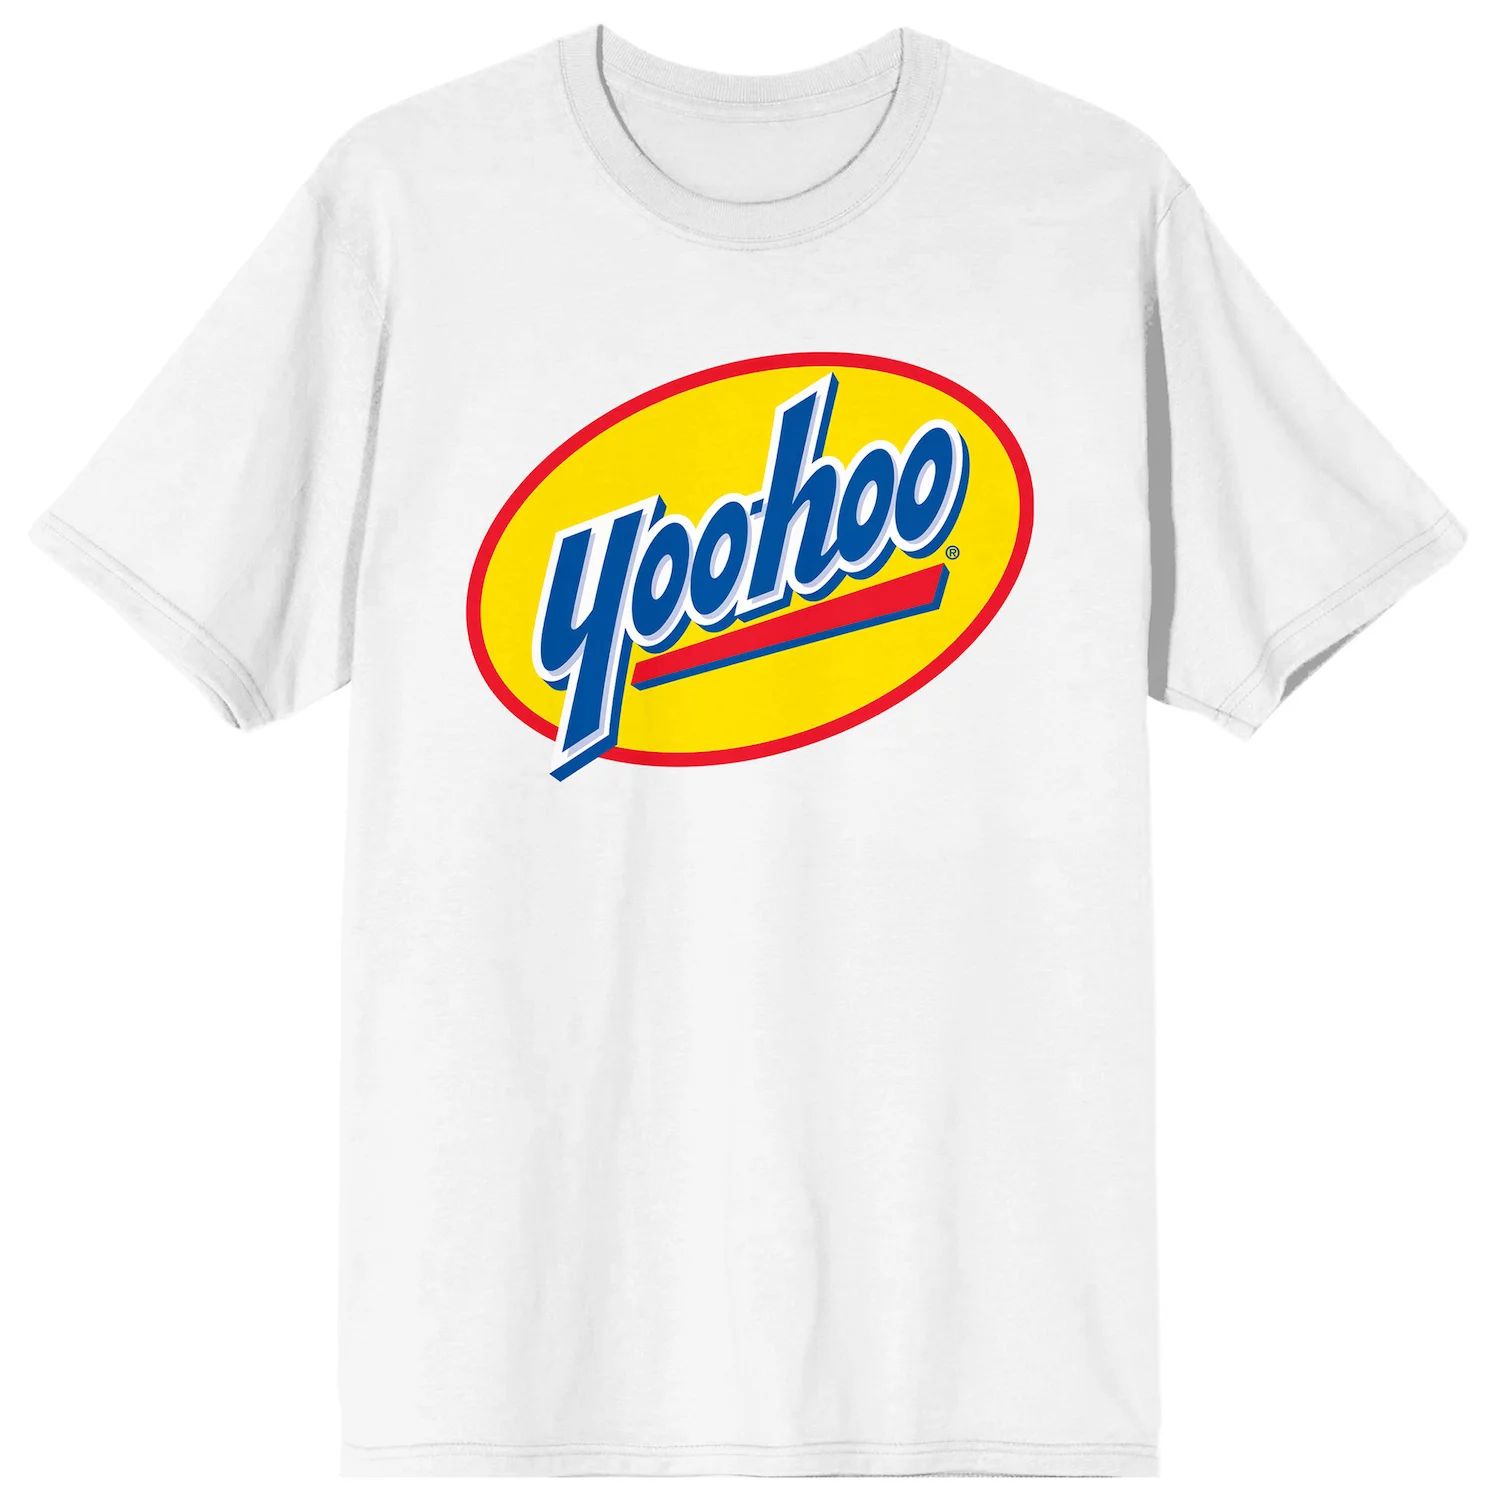 Мужская футболка с логотипом Yoo-hoo Chocolate Drink Licensed Character